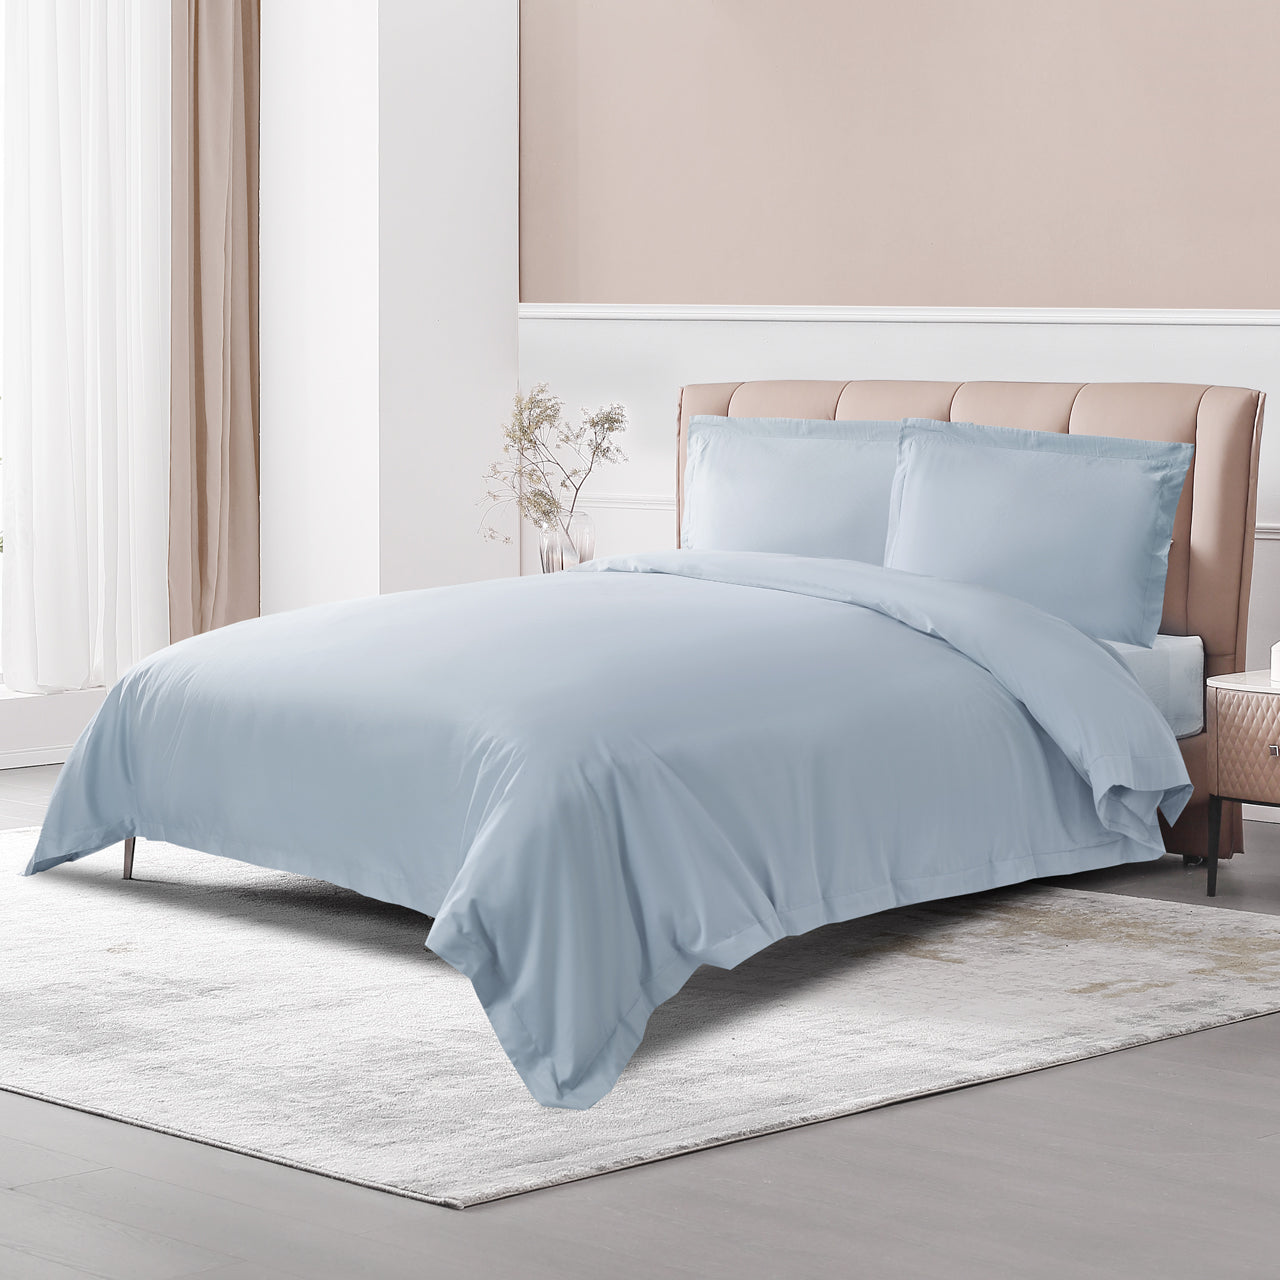 Luxury & Elegant Misty Blue 100% Long-Staple Cotton Duvet Cover Set (3 Pieces)